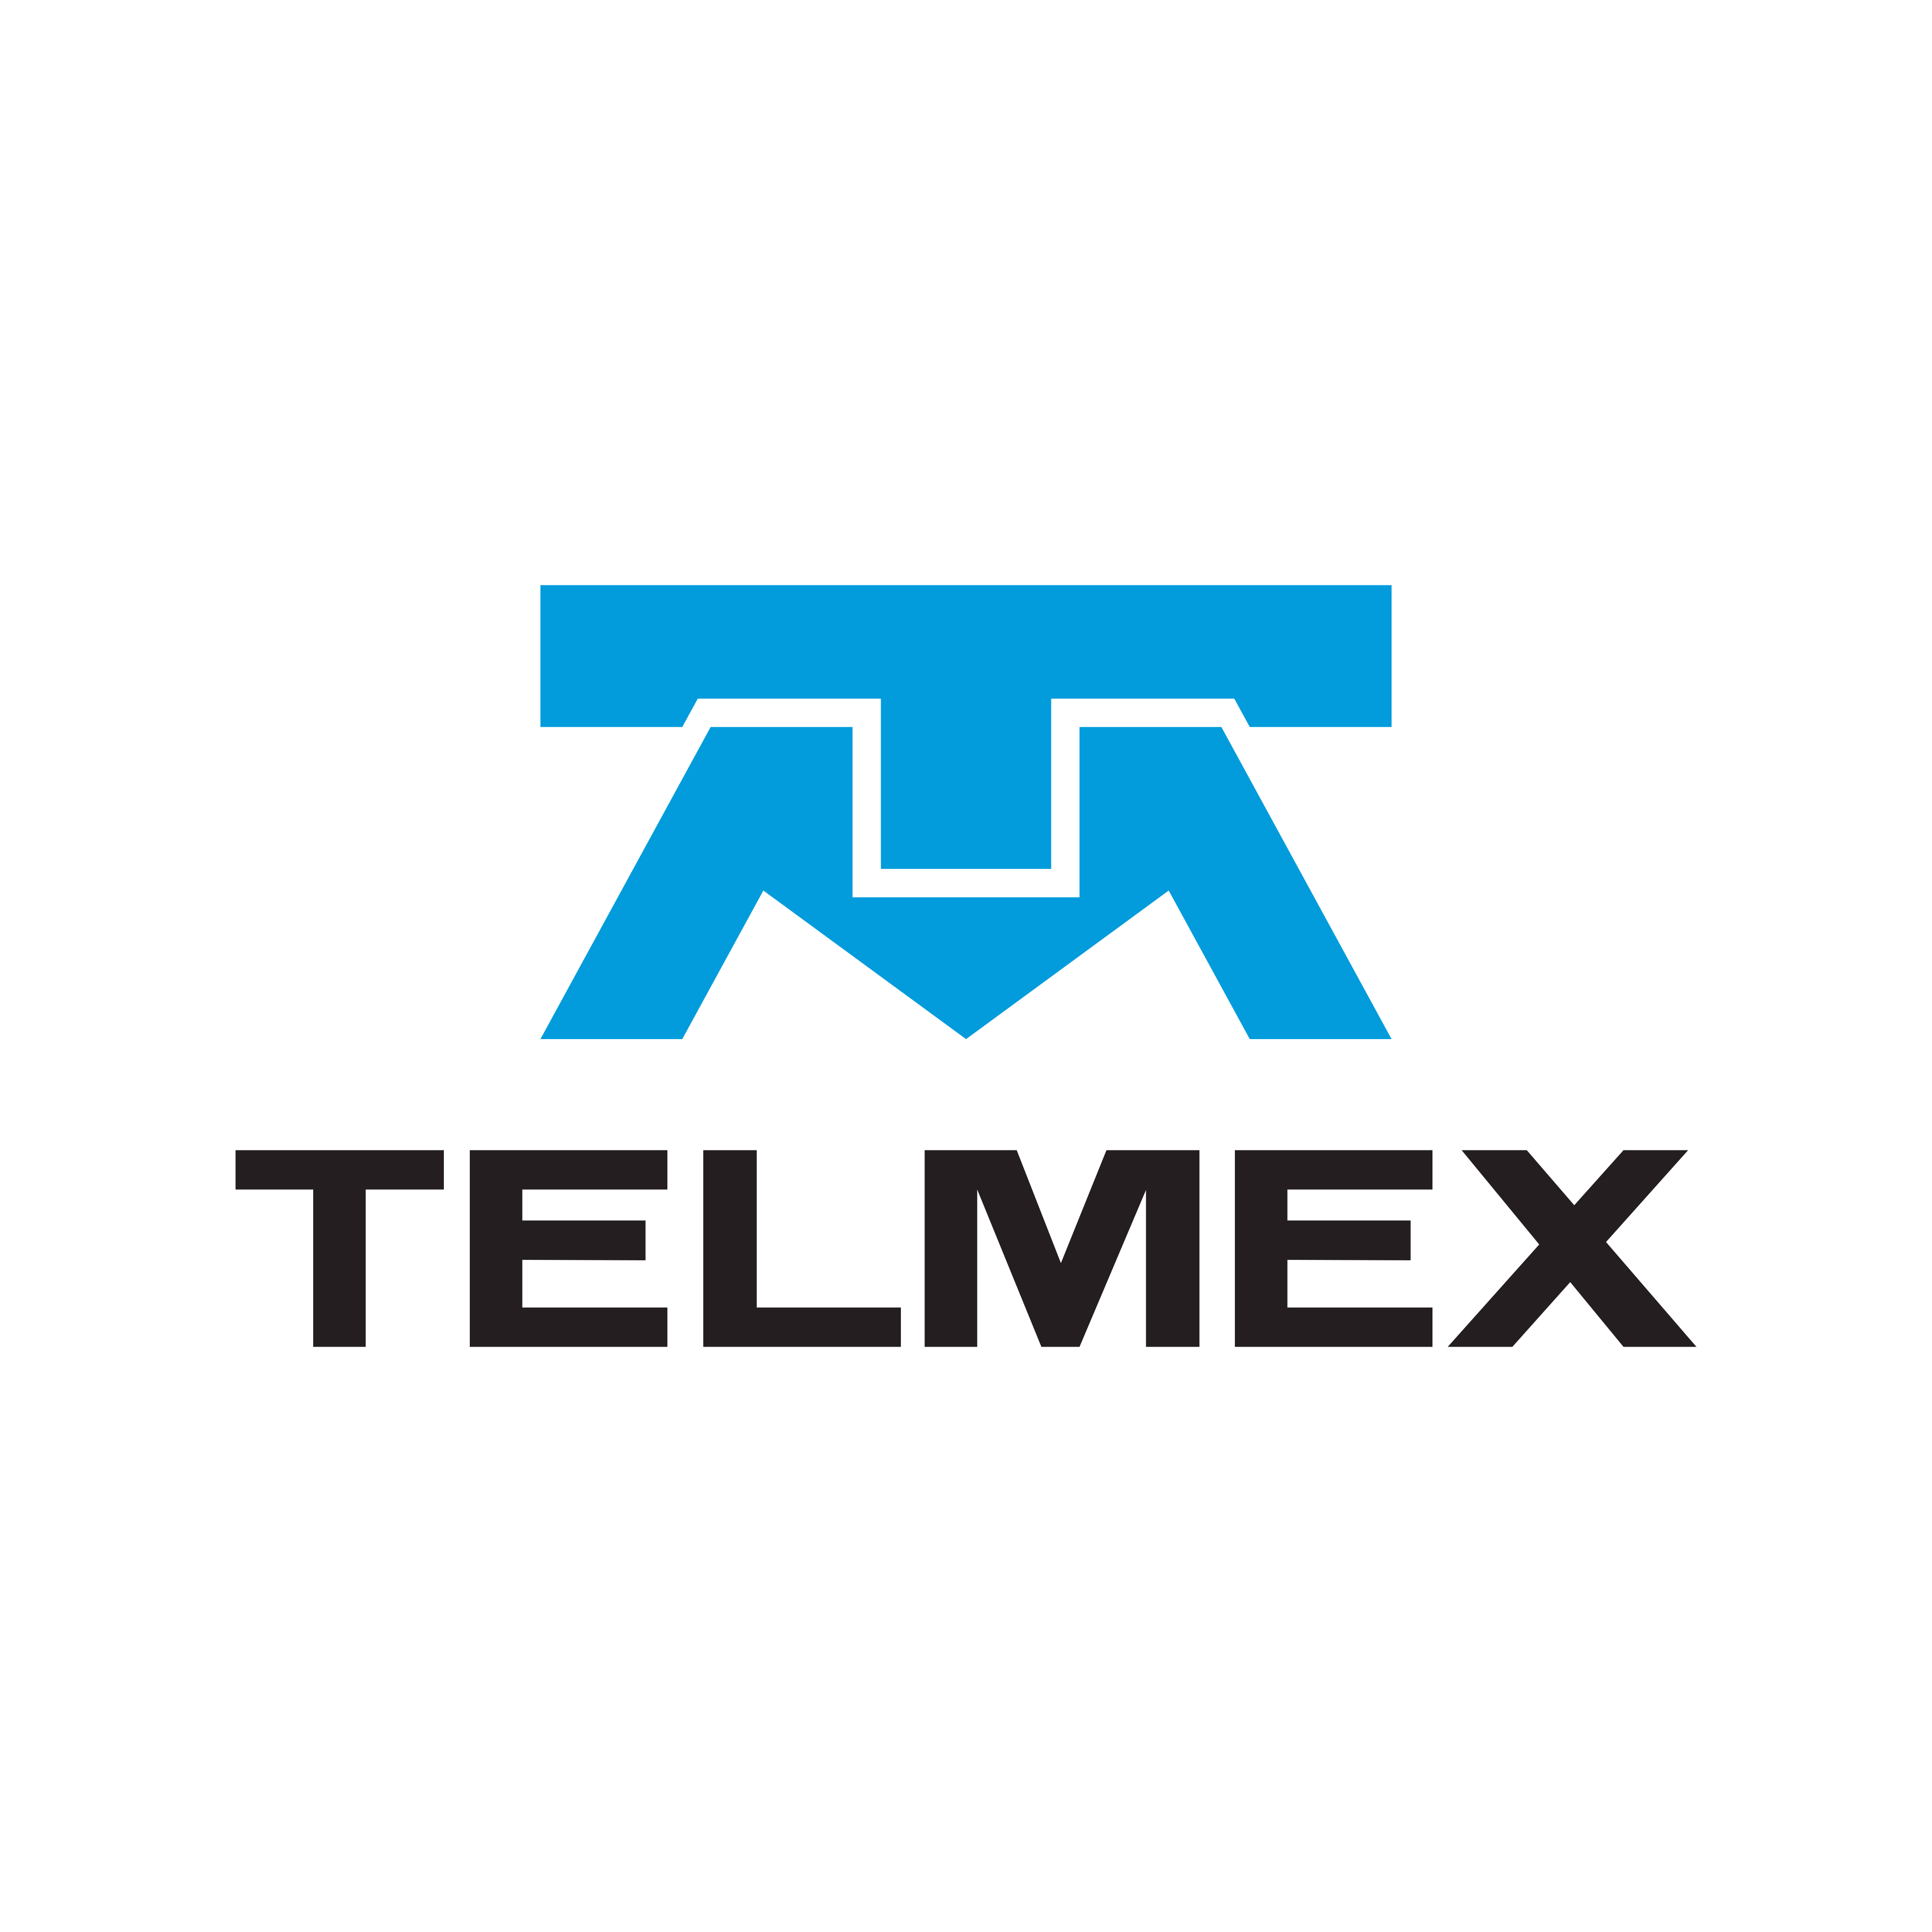 telmex logo 0 - Telmex Logo